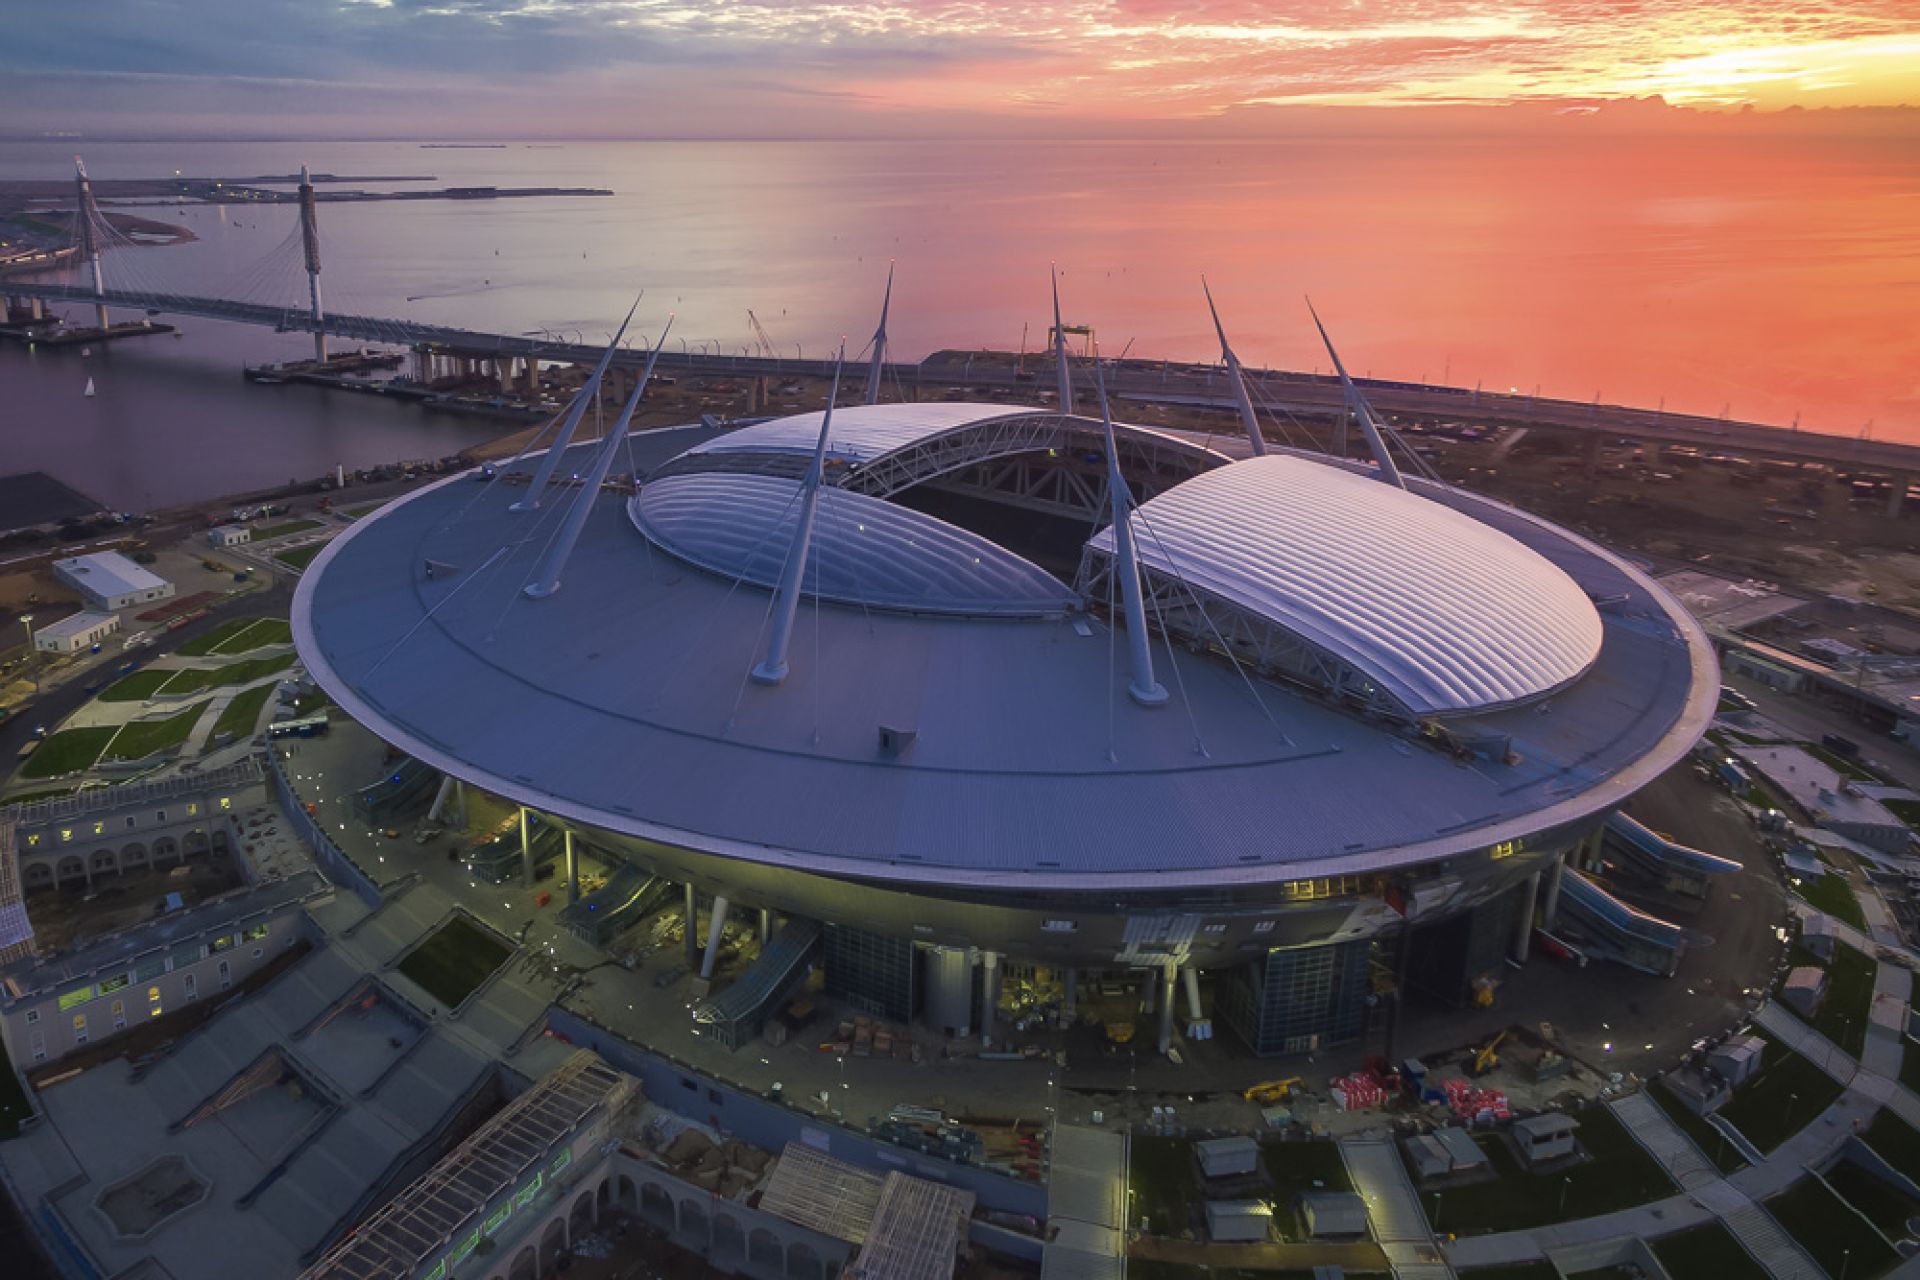 Aerial image of the stadium